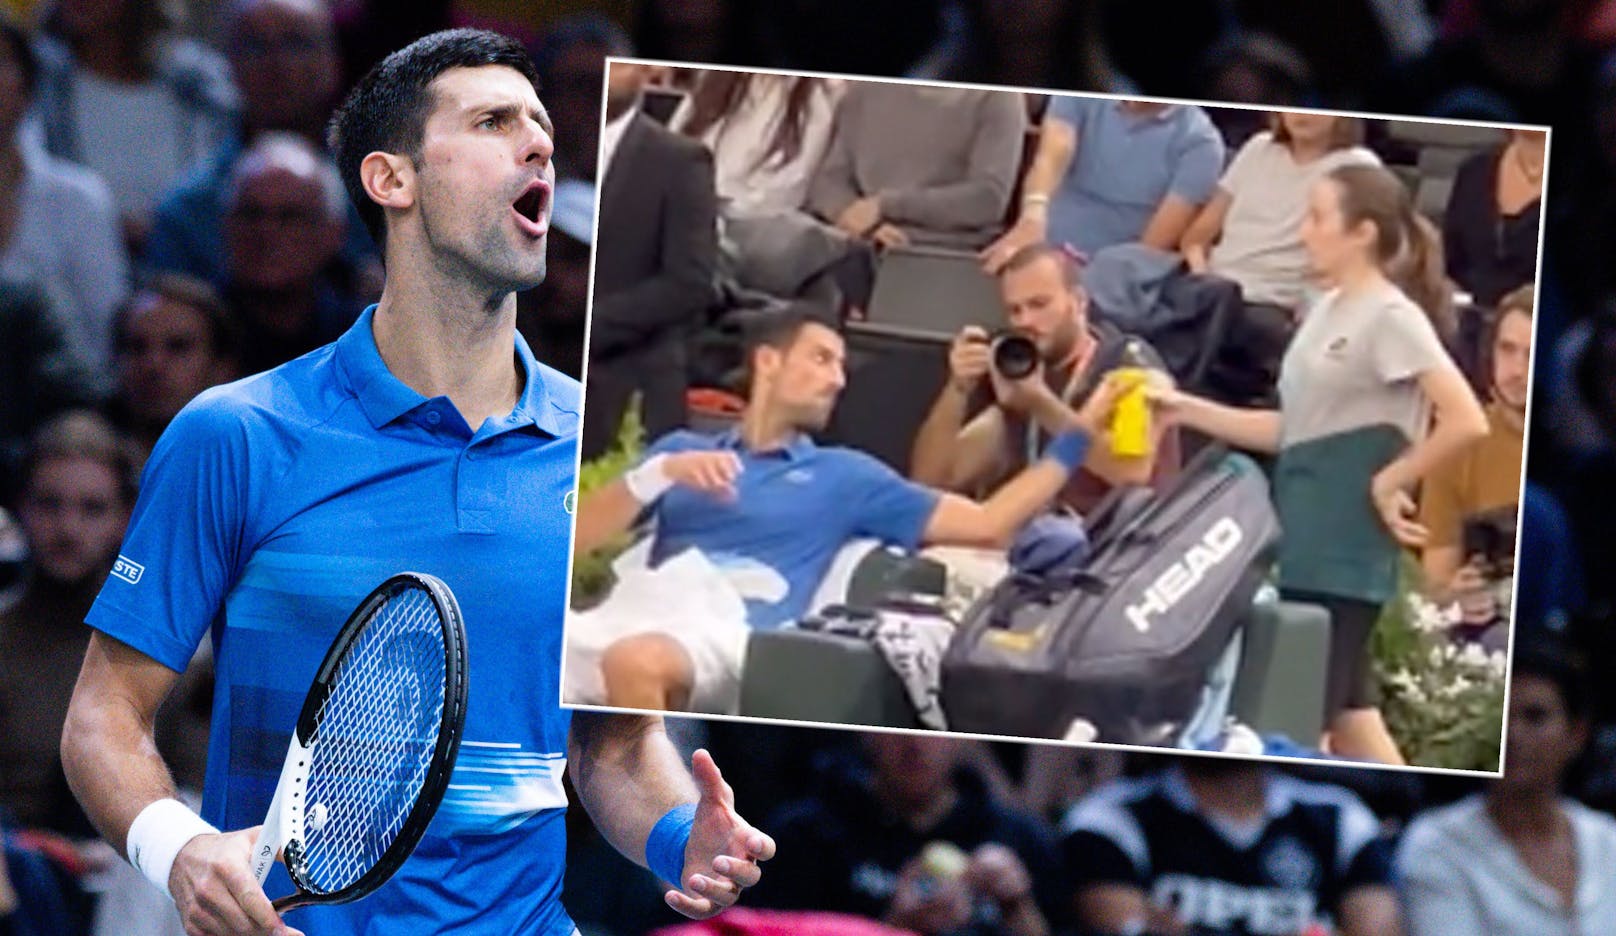 Video-Aufreger: Bekommt Djokovic hier Doping-Trank?